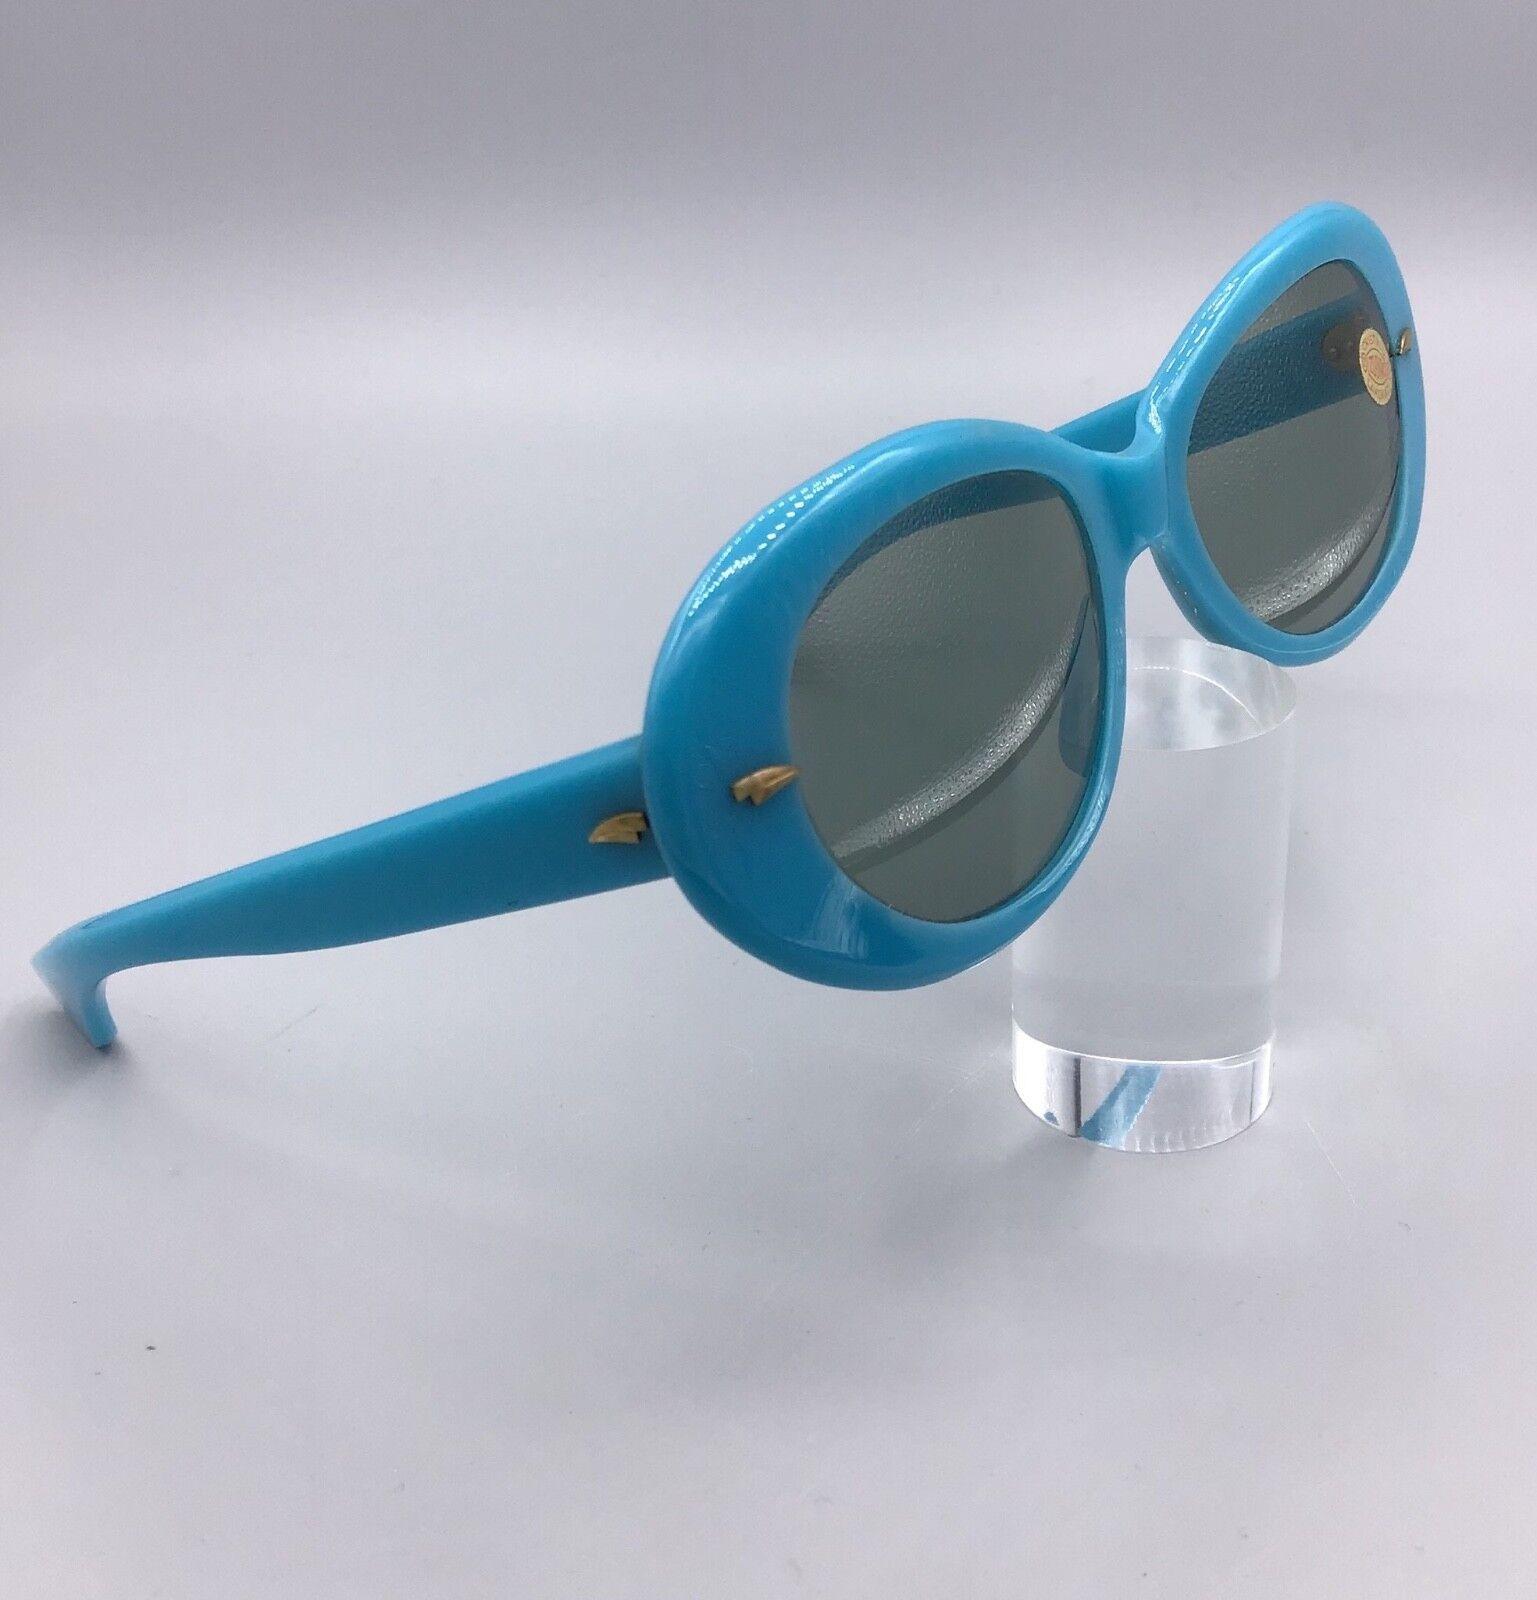 Zodiac Cristalli lavorati lens lenti occhiale vintage da sole Sunglasses